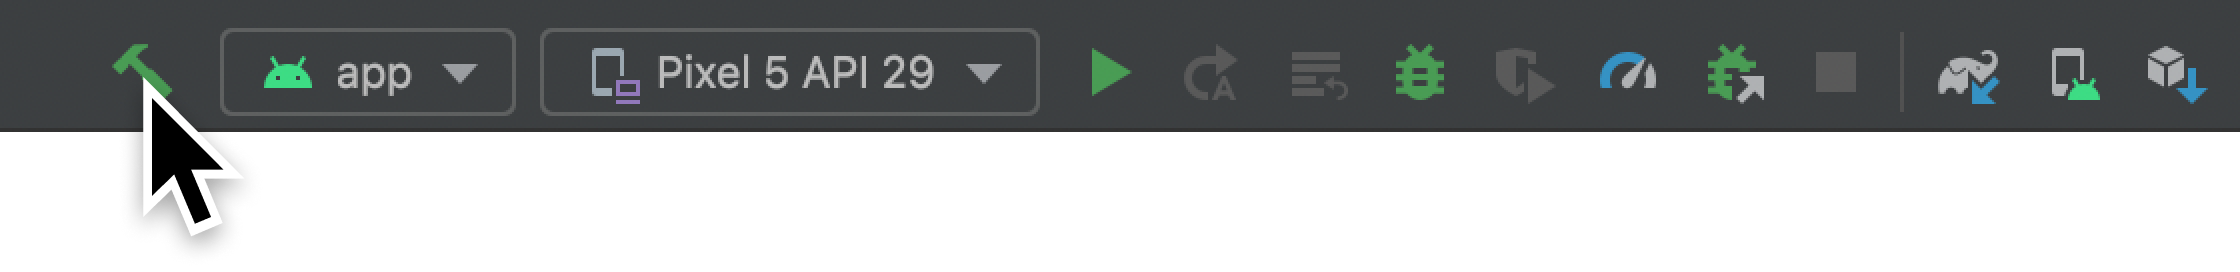 Botón Build button en la barra de herramientas